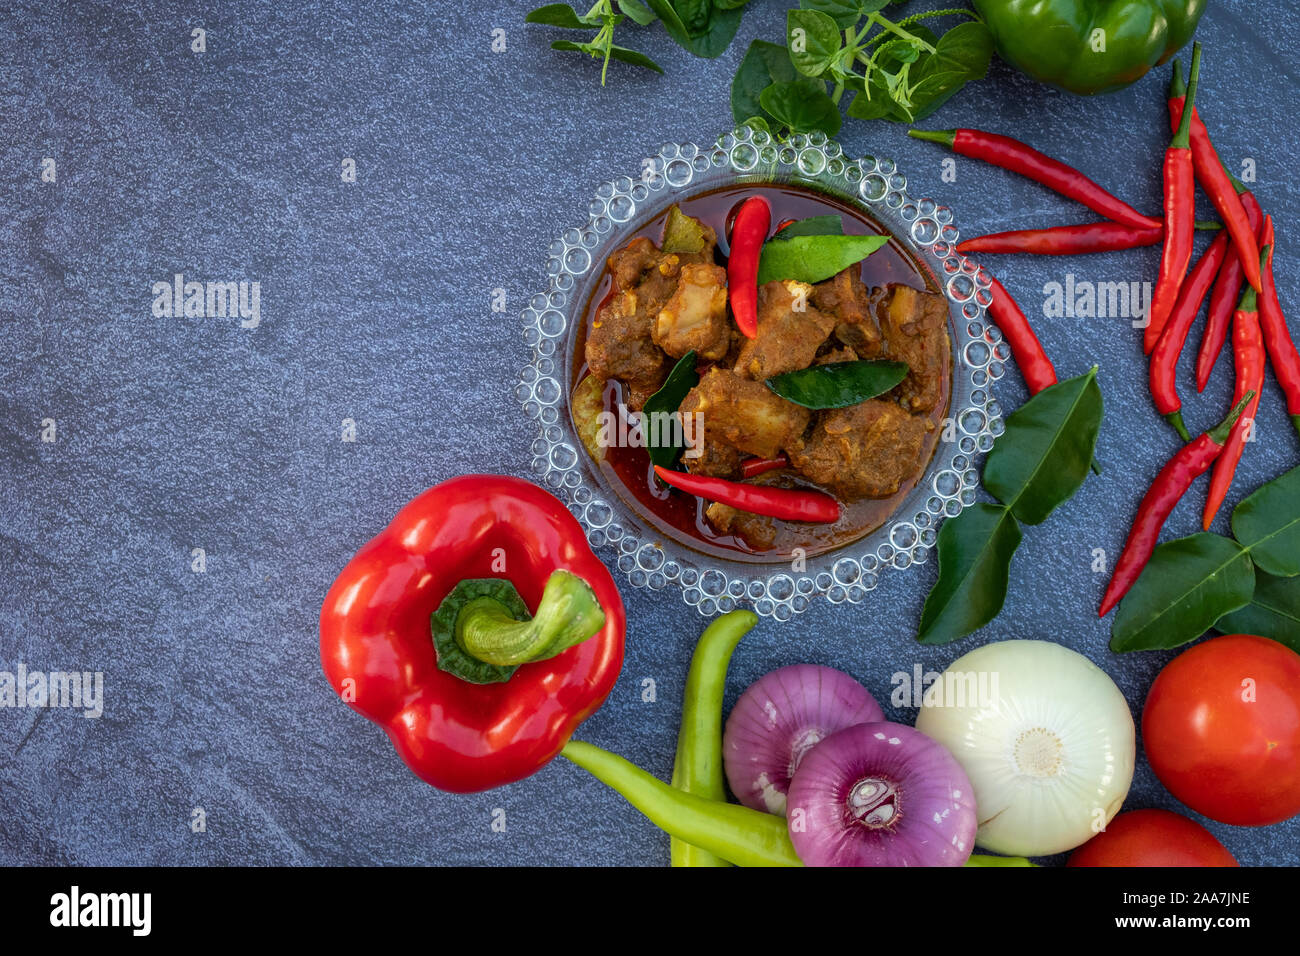 La nourriture asiatique, telles que Thai red curry Vue supérieure avec copie espace.Les légumes et les ingrédients sont autour de la bonne cuisine design sur l'arrière-plan en pierre. Banque D'Images